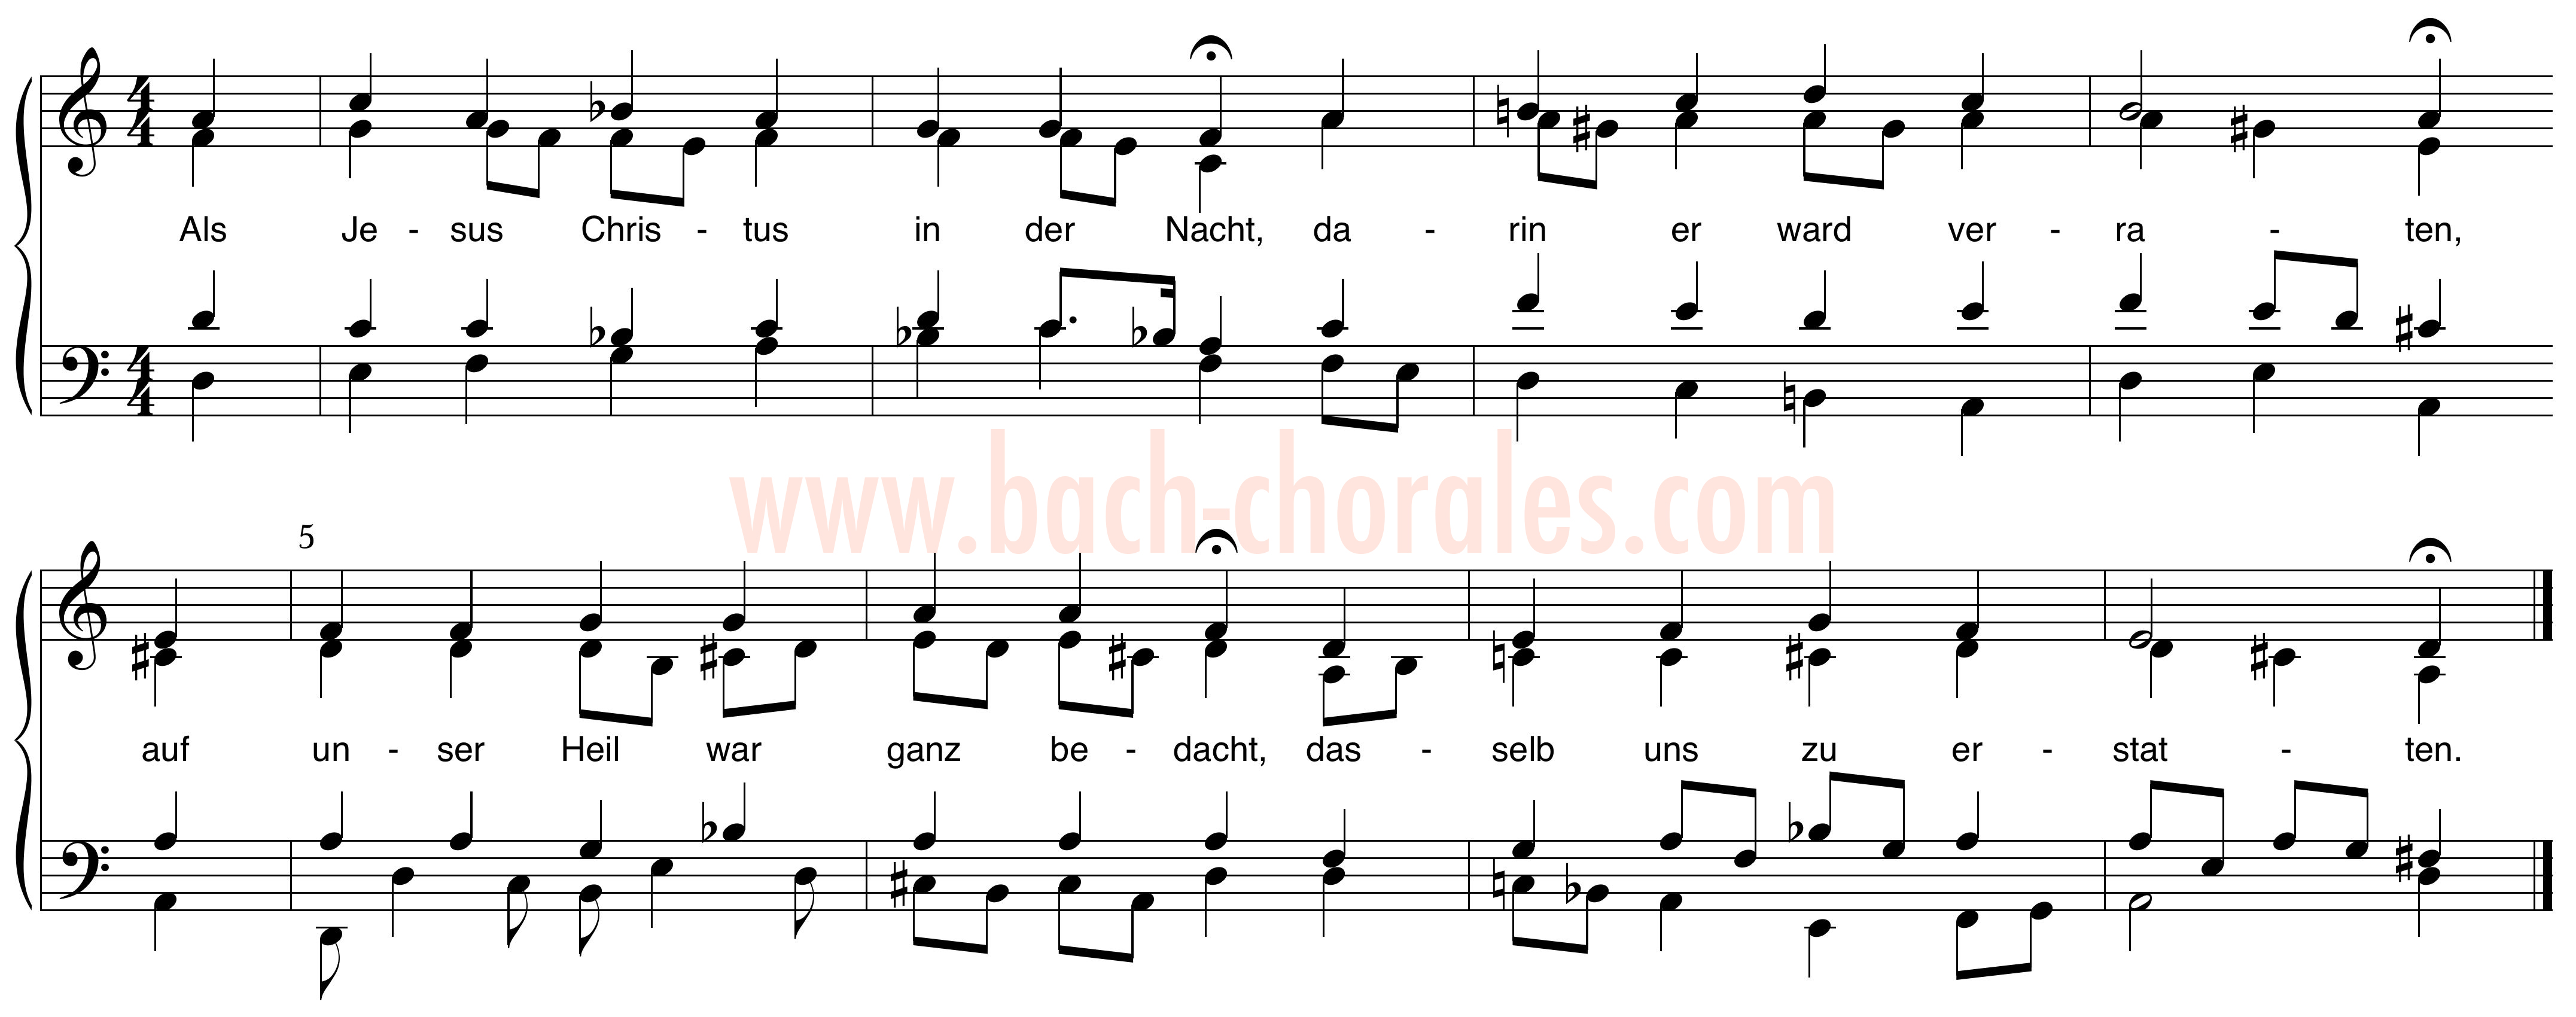 notenbeeld BWV 265 op https://www.bach-chorales.com/